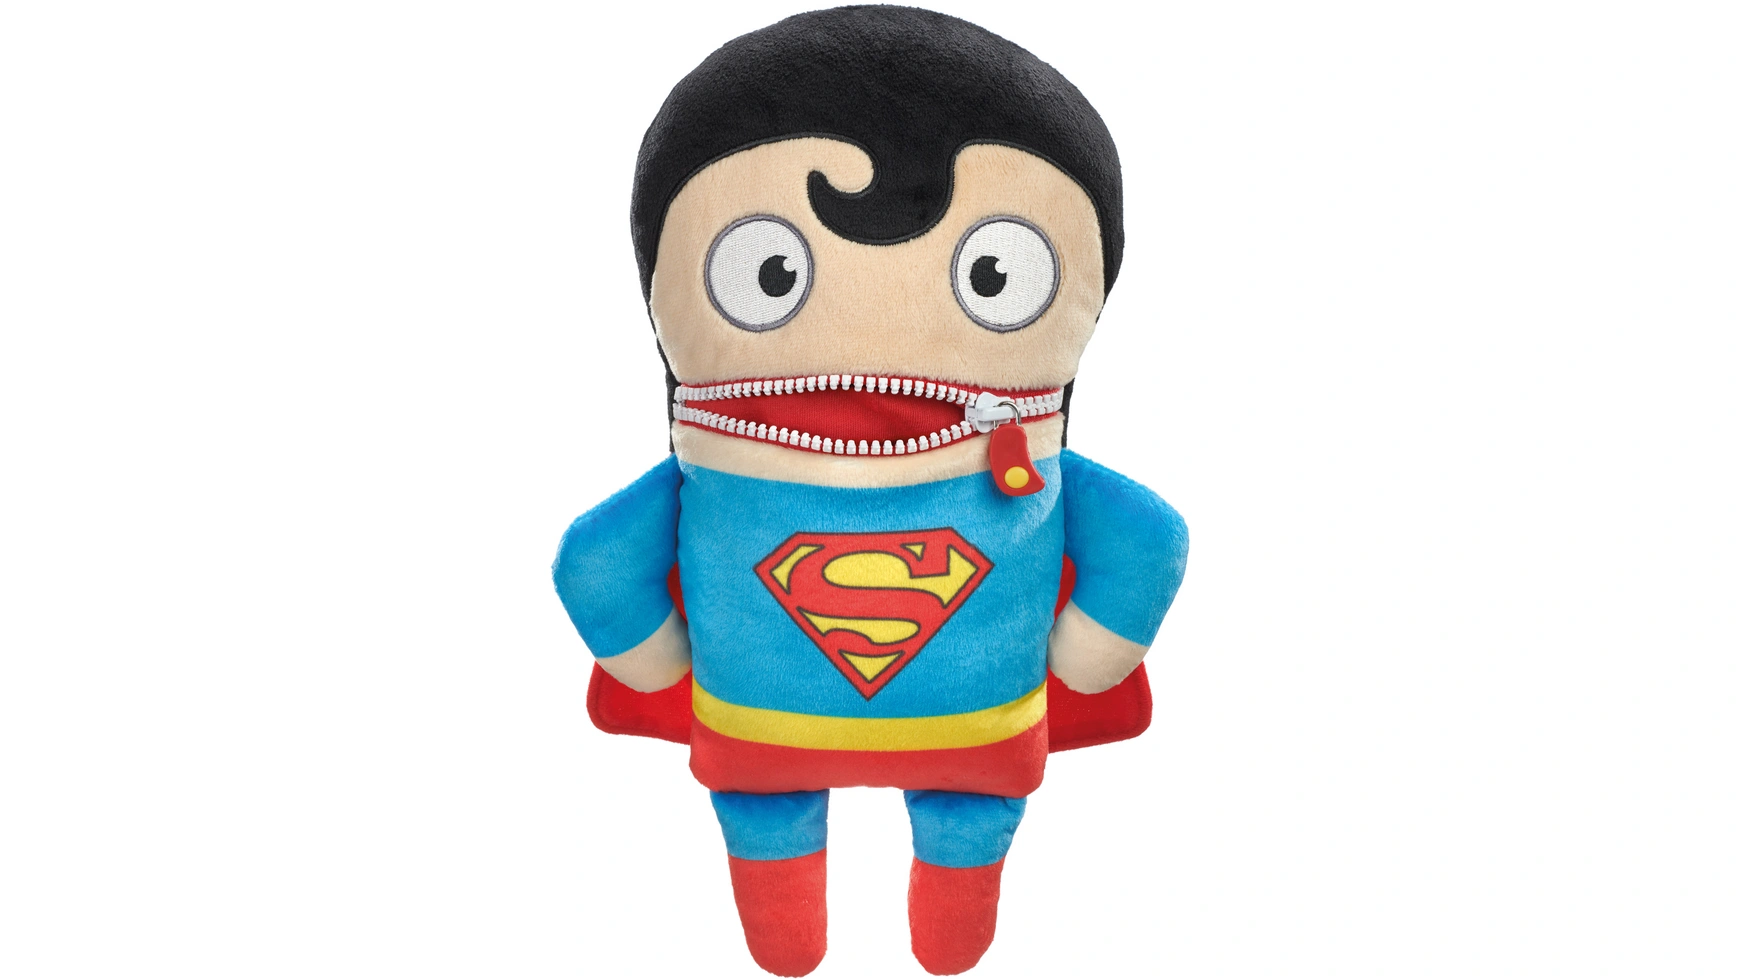 Schmidt Spiele Worry Eater DC Super Hero: Worry Eater, Супермен, 29 см фигурка утка tubbz dc comics – супермен 9 см